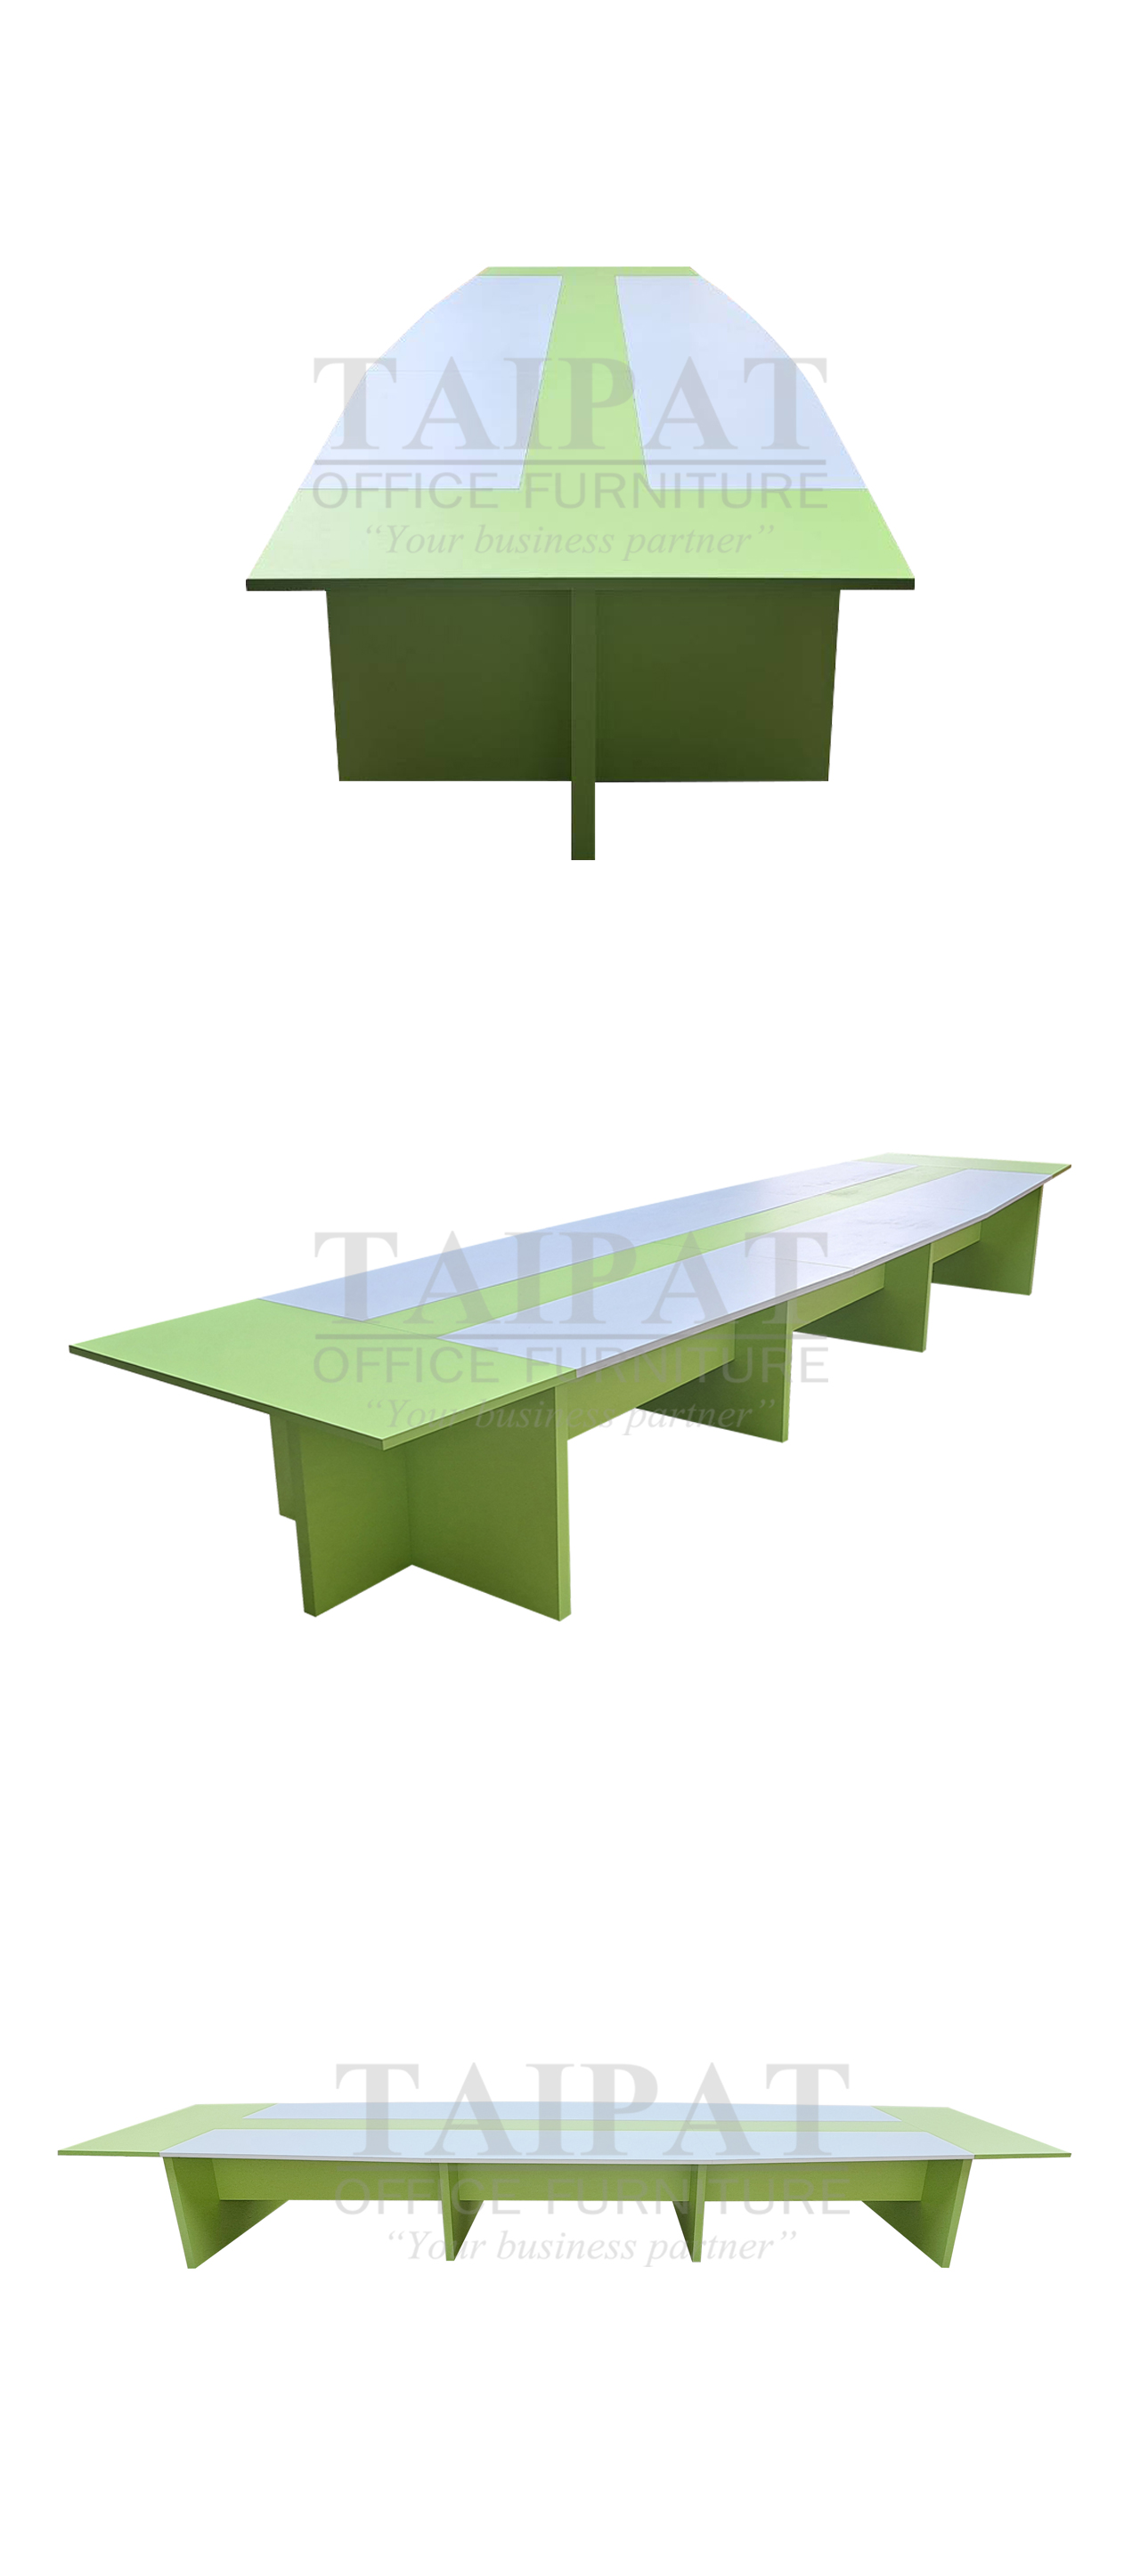 โต๊ะประชุม CF-11 ขนาดโดยรวม : 570 x 150 x 75 ซม.  